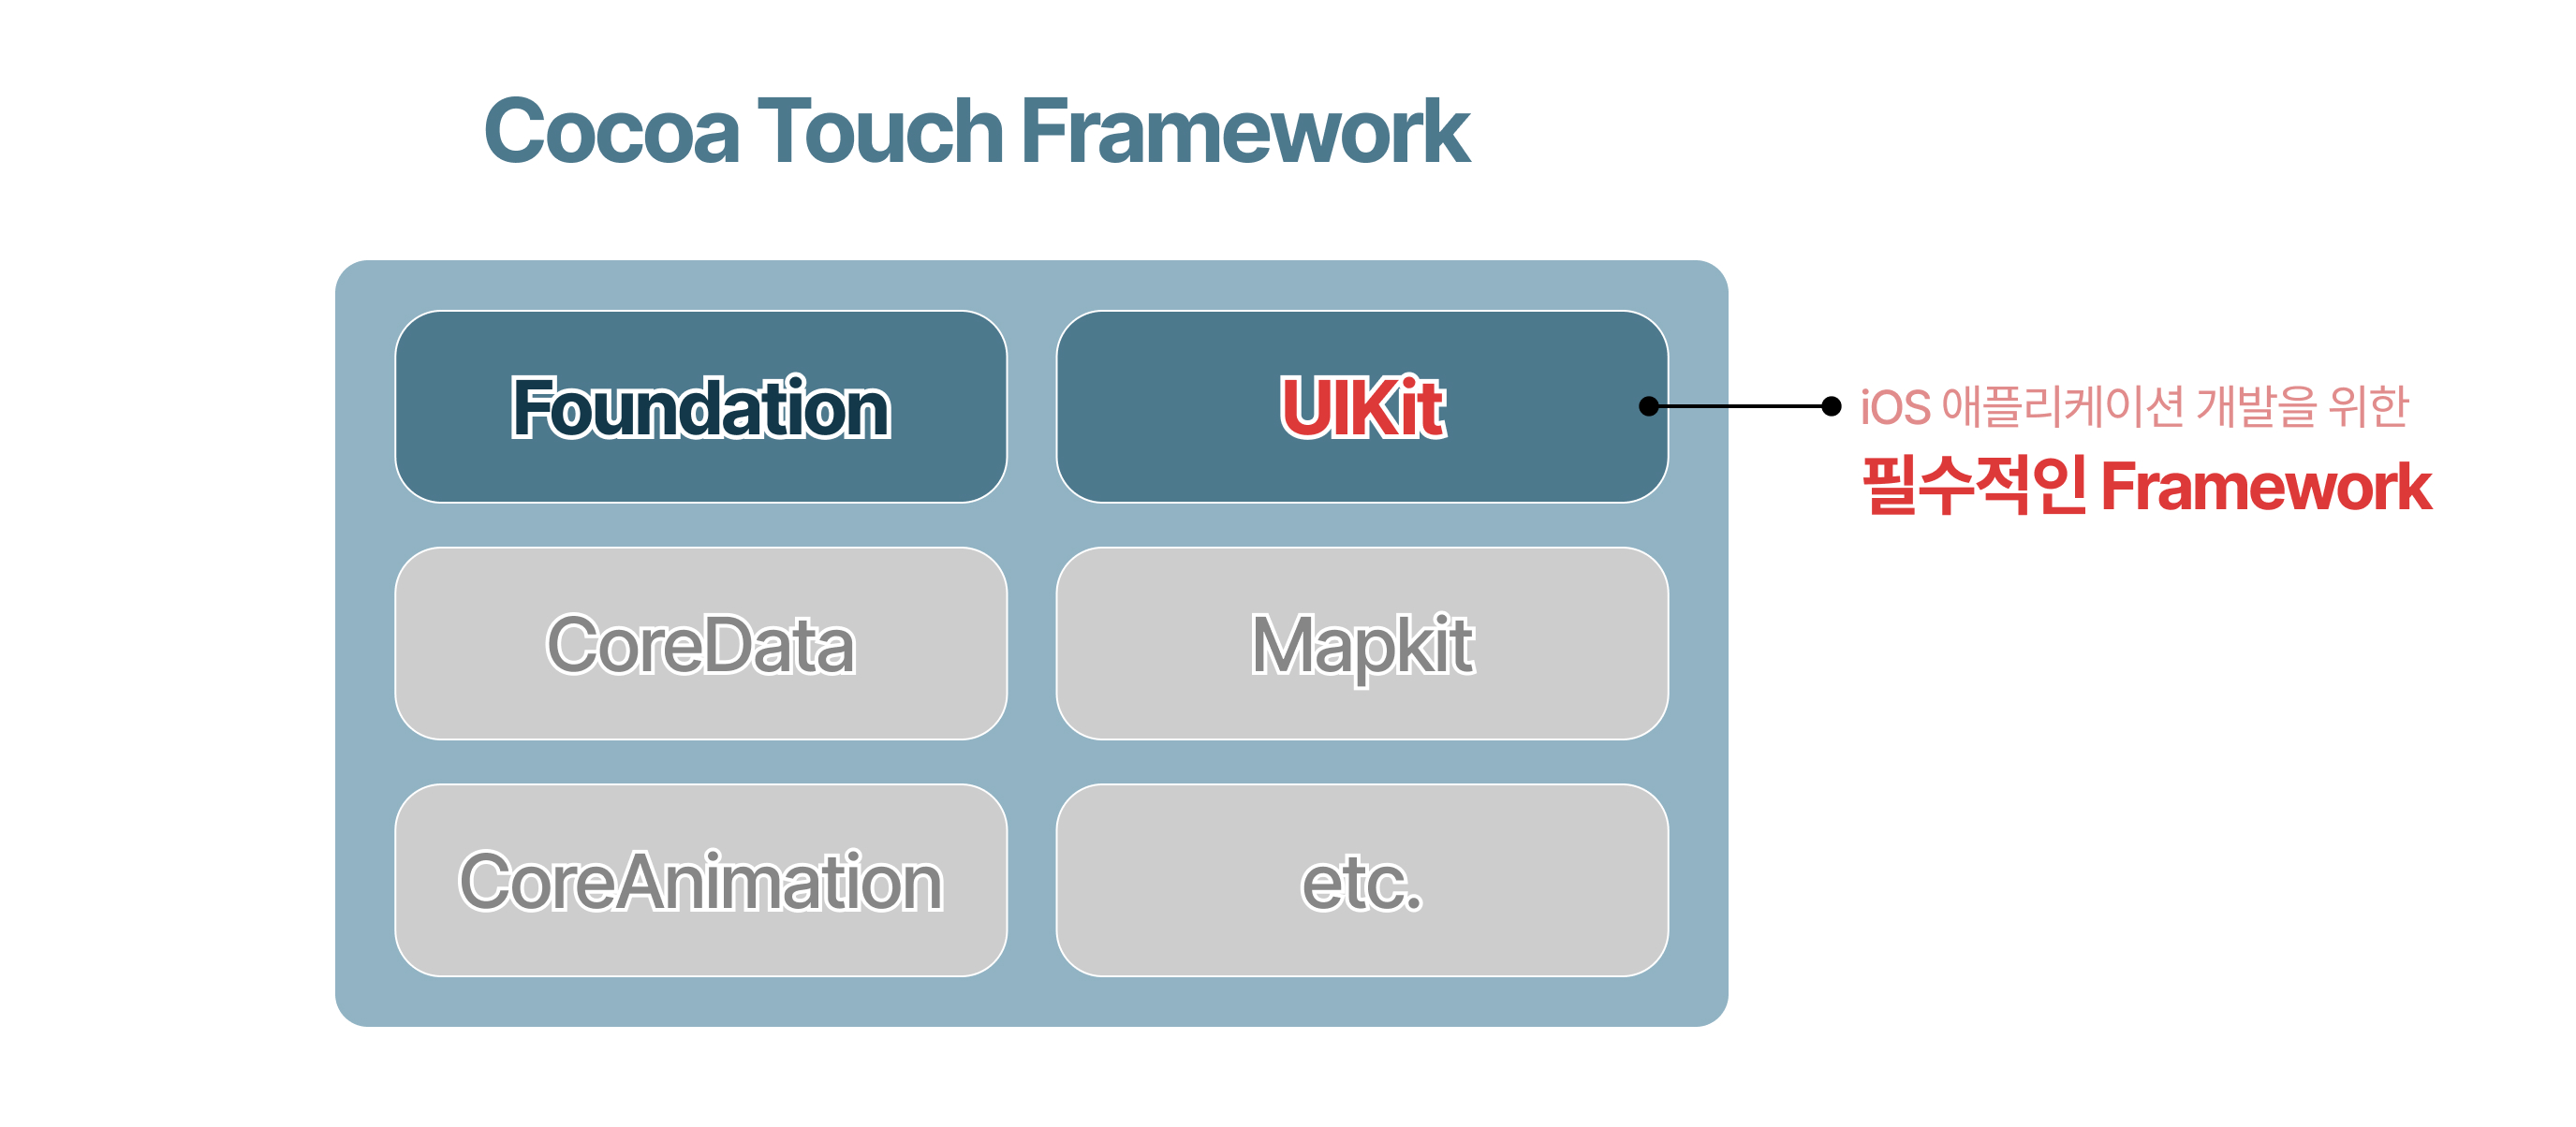 Cocoa Touch Framework 계층 내 위치한 UIKit Framework